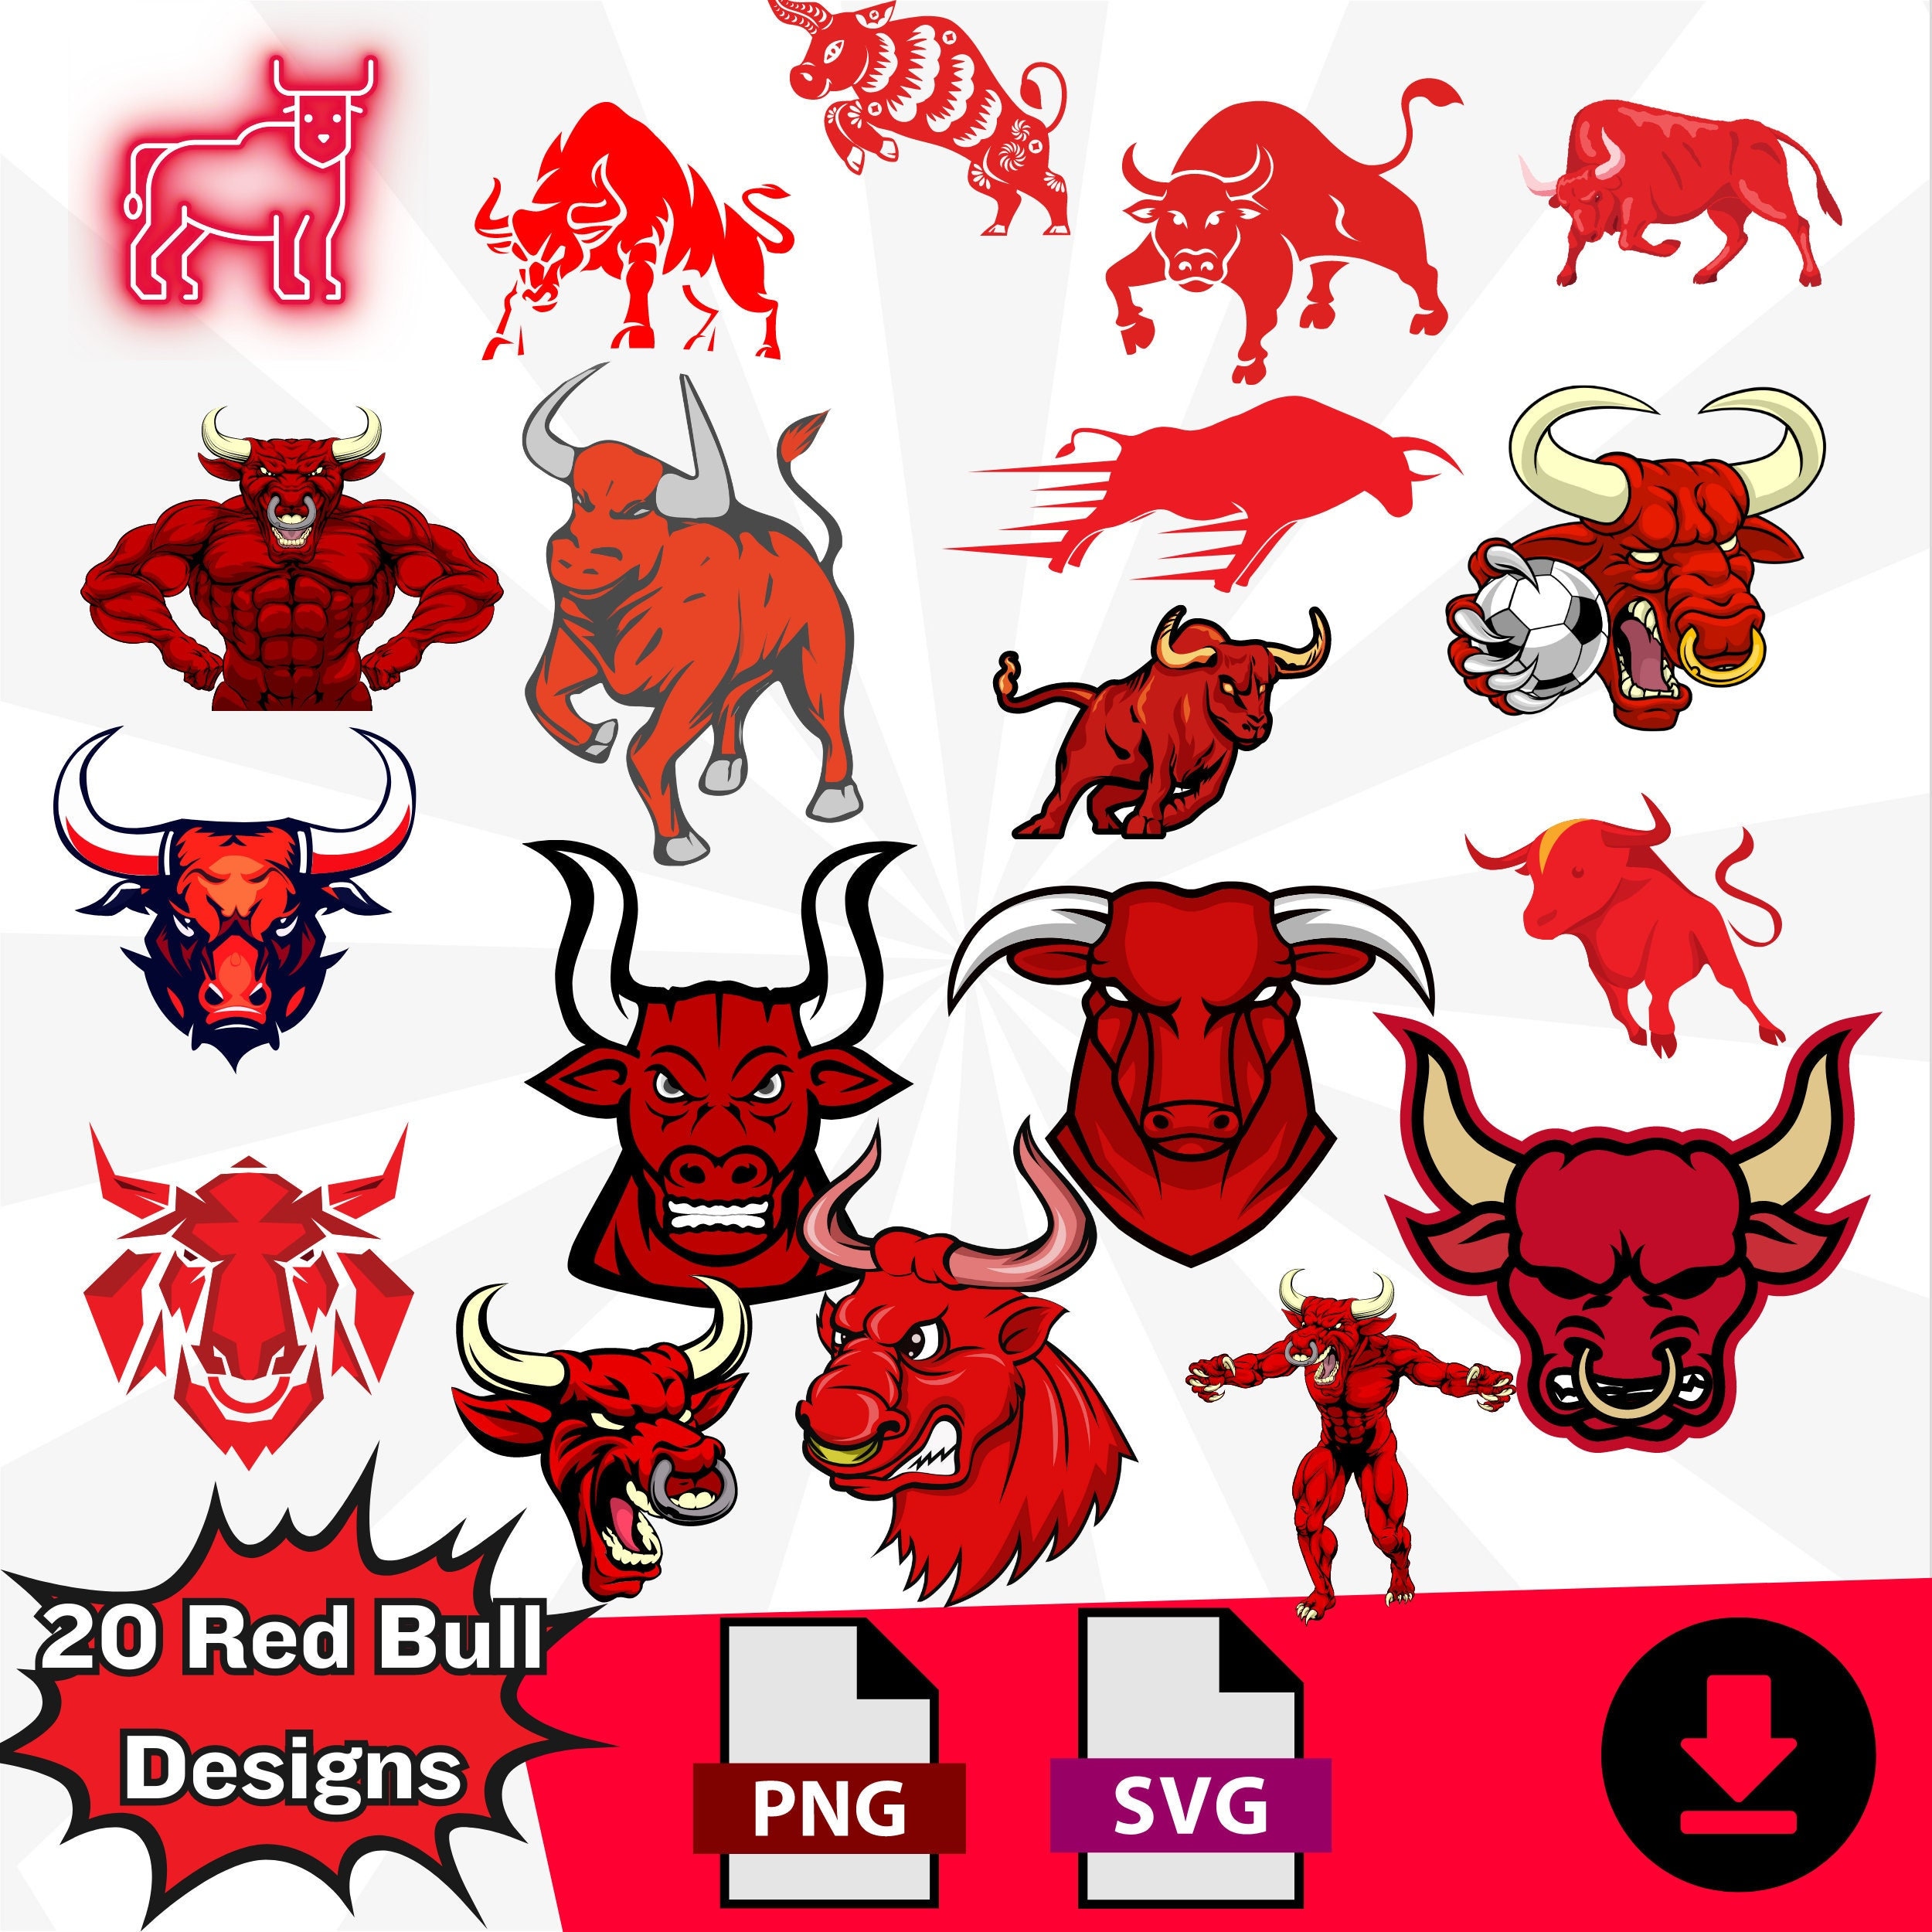 MLS Logo New York Red Bulls, New York Red Bulls SVG, Vector New York Red  Bulls, Clipart New York Red Bulls, Football Kit New York Red Bulls, SVG,  DXF, PNG, Soccer Logo